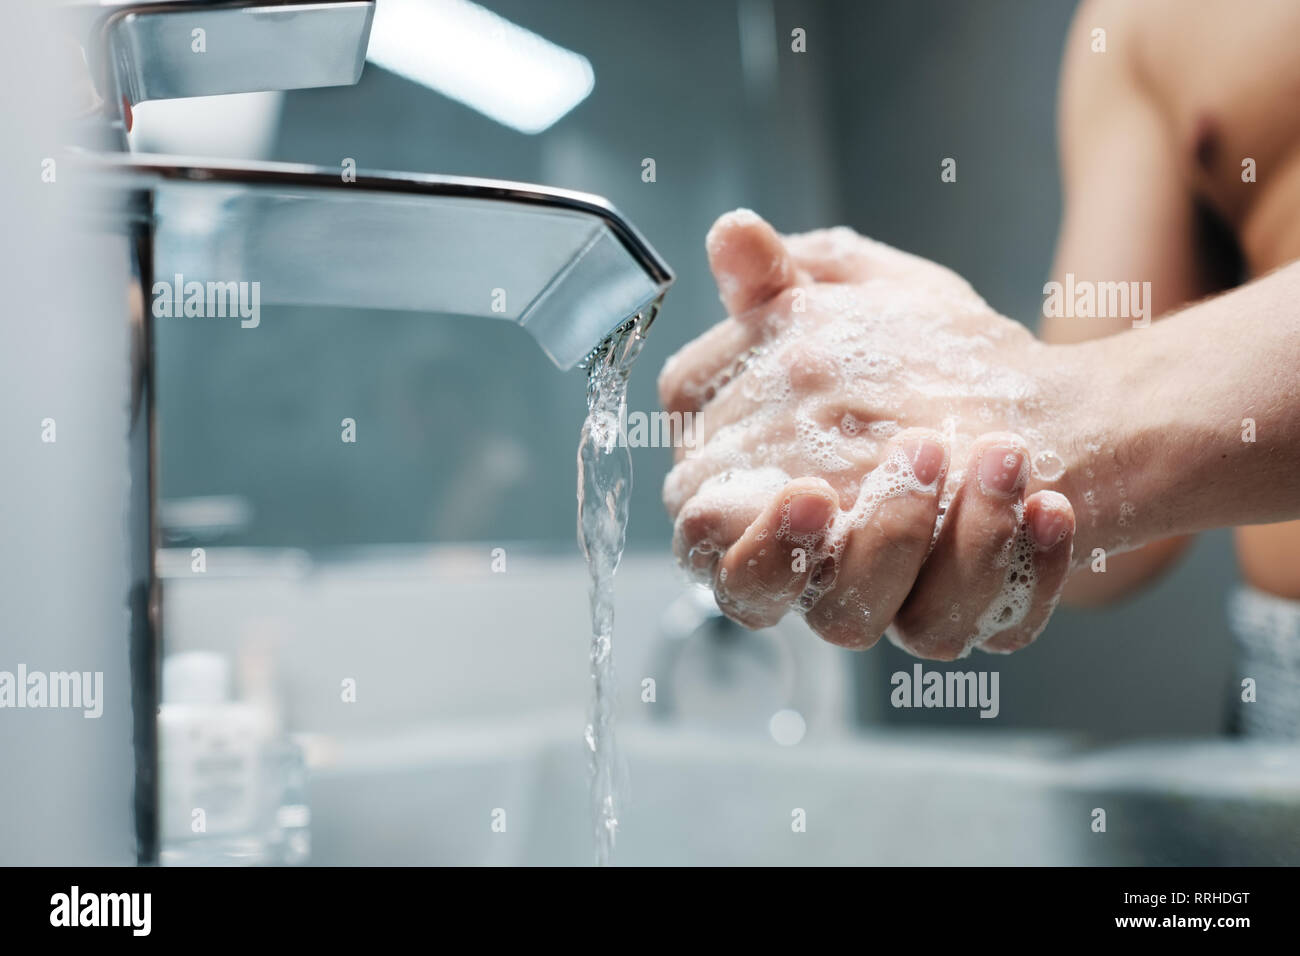 L'homme se laver les mains avec de l'eau et du savon dans la salle de bains Banque D'Images